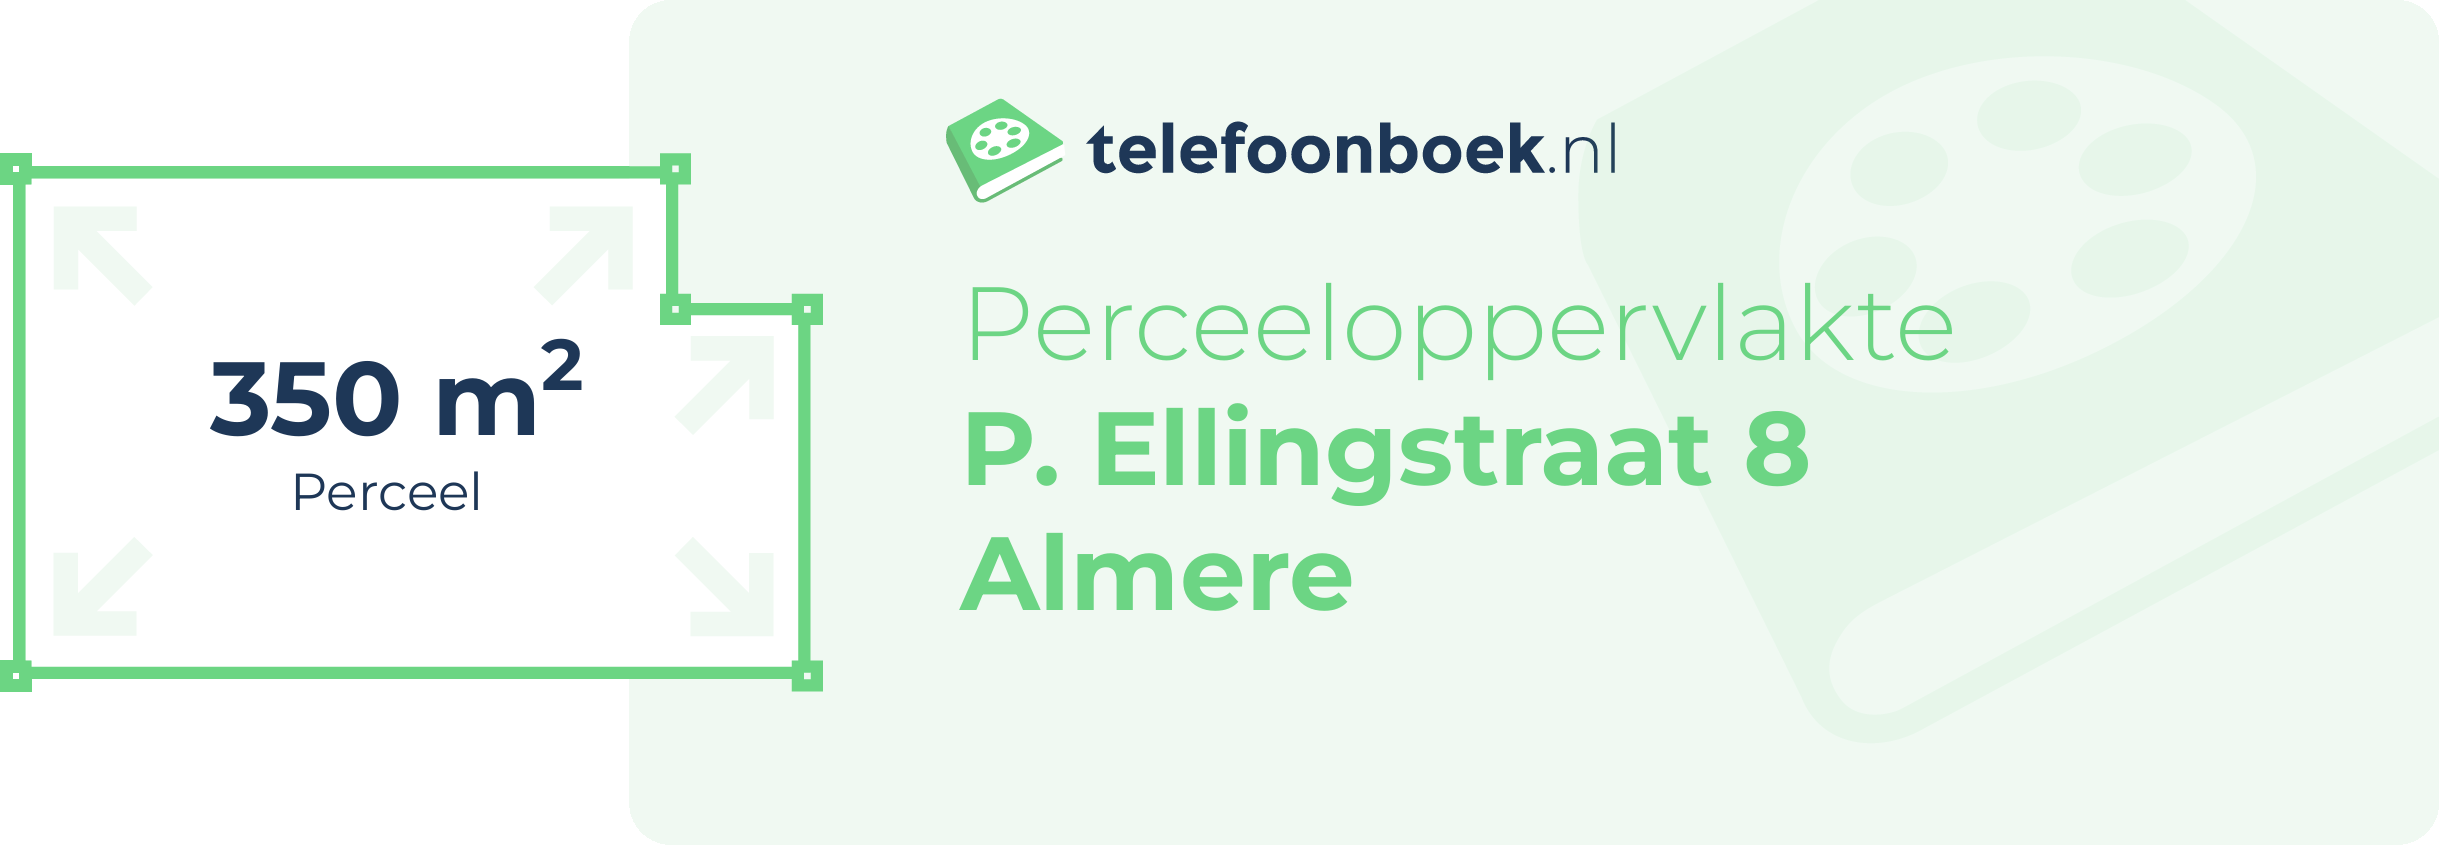 Perceeloppervlakte P. Ellingstraat 8 Almere